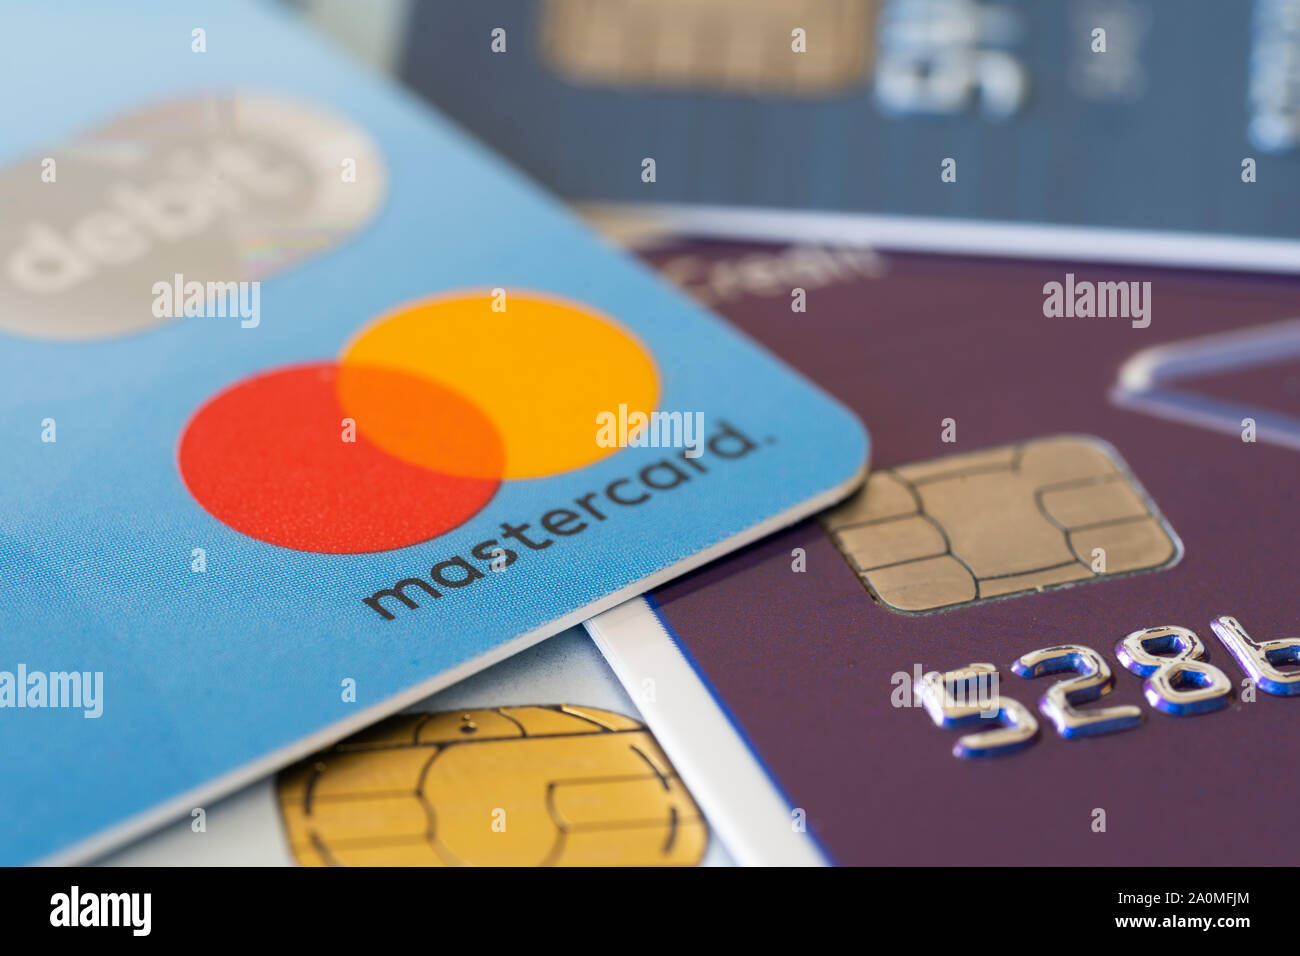 Debit Kreditkarten Visa und Mastercard, die Konzepte der Finanzen und Schulden Stockfoto